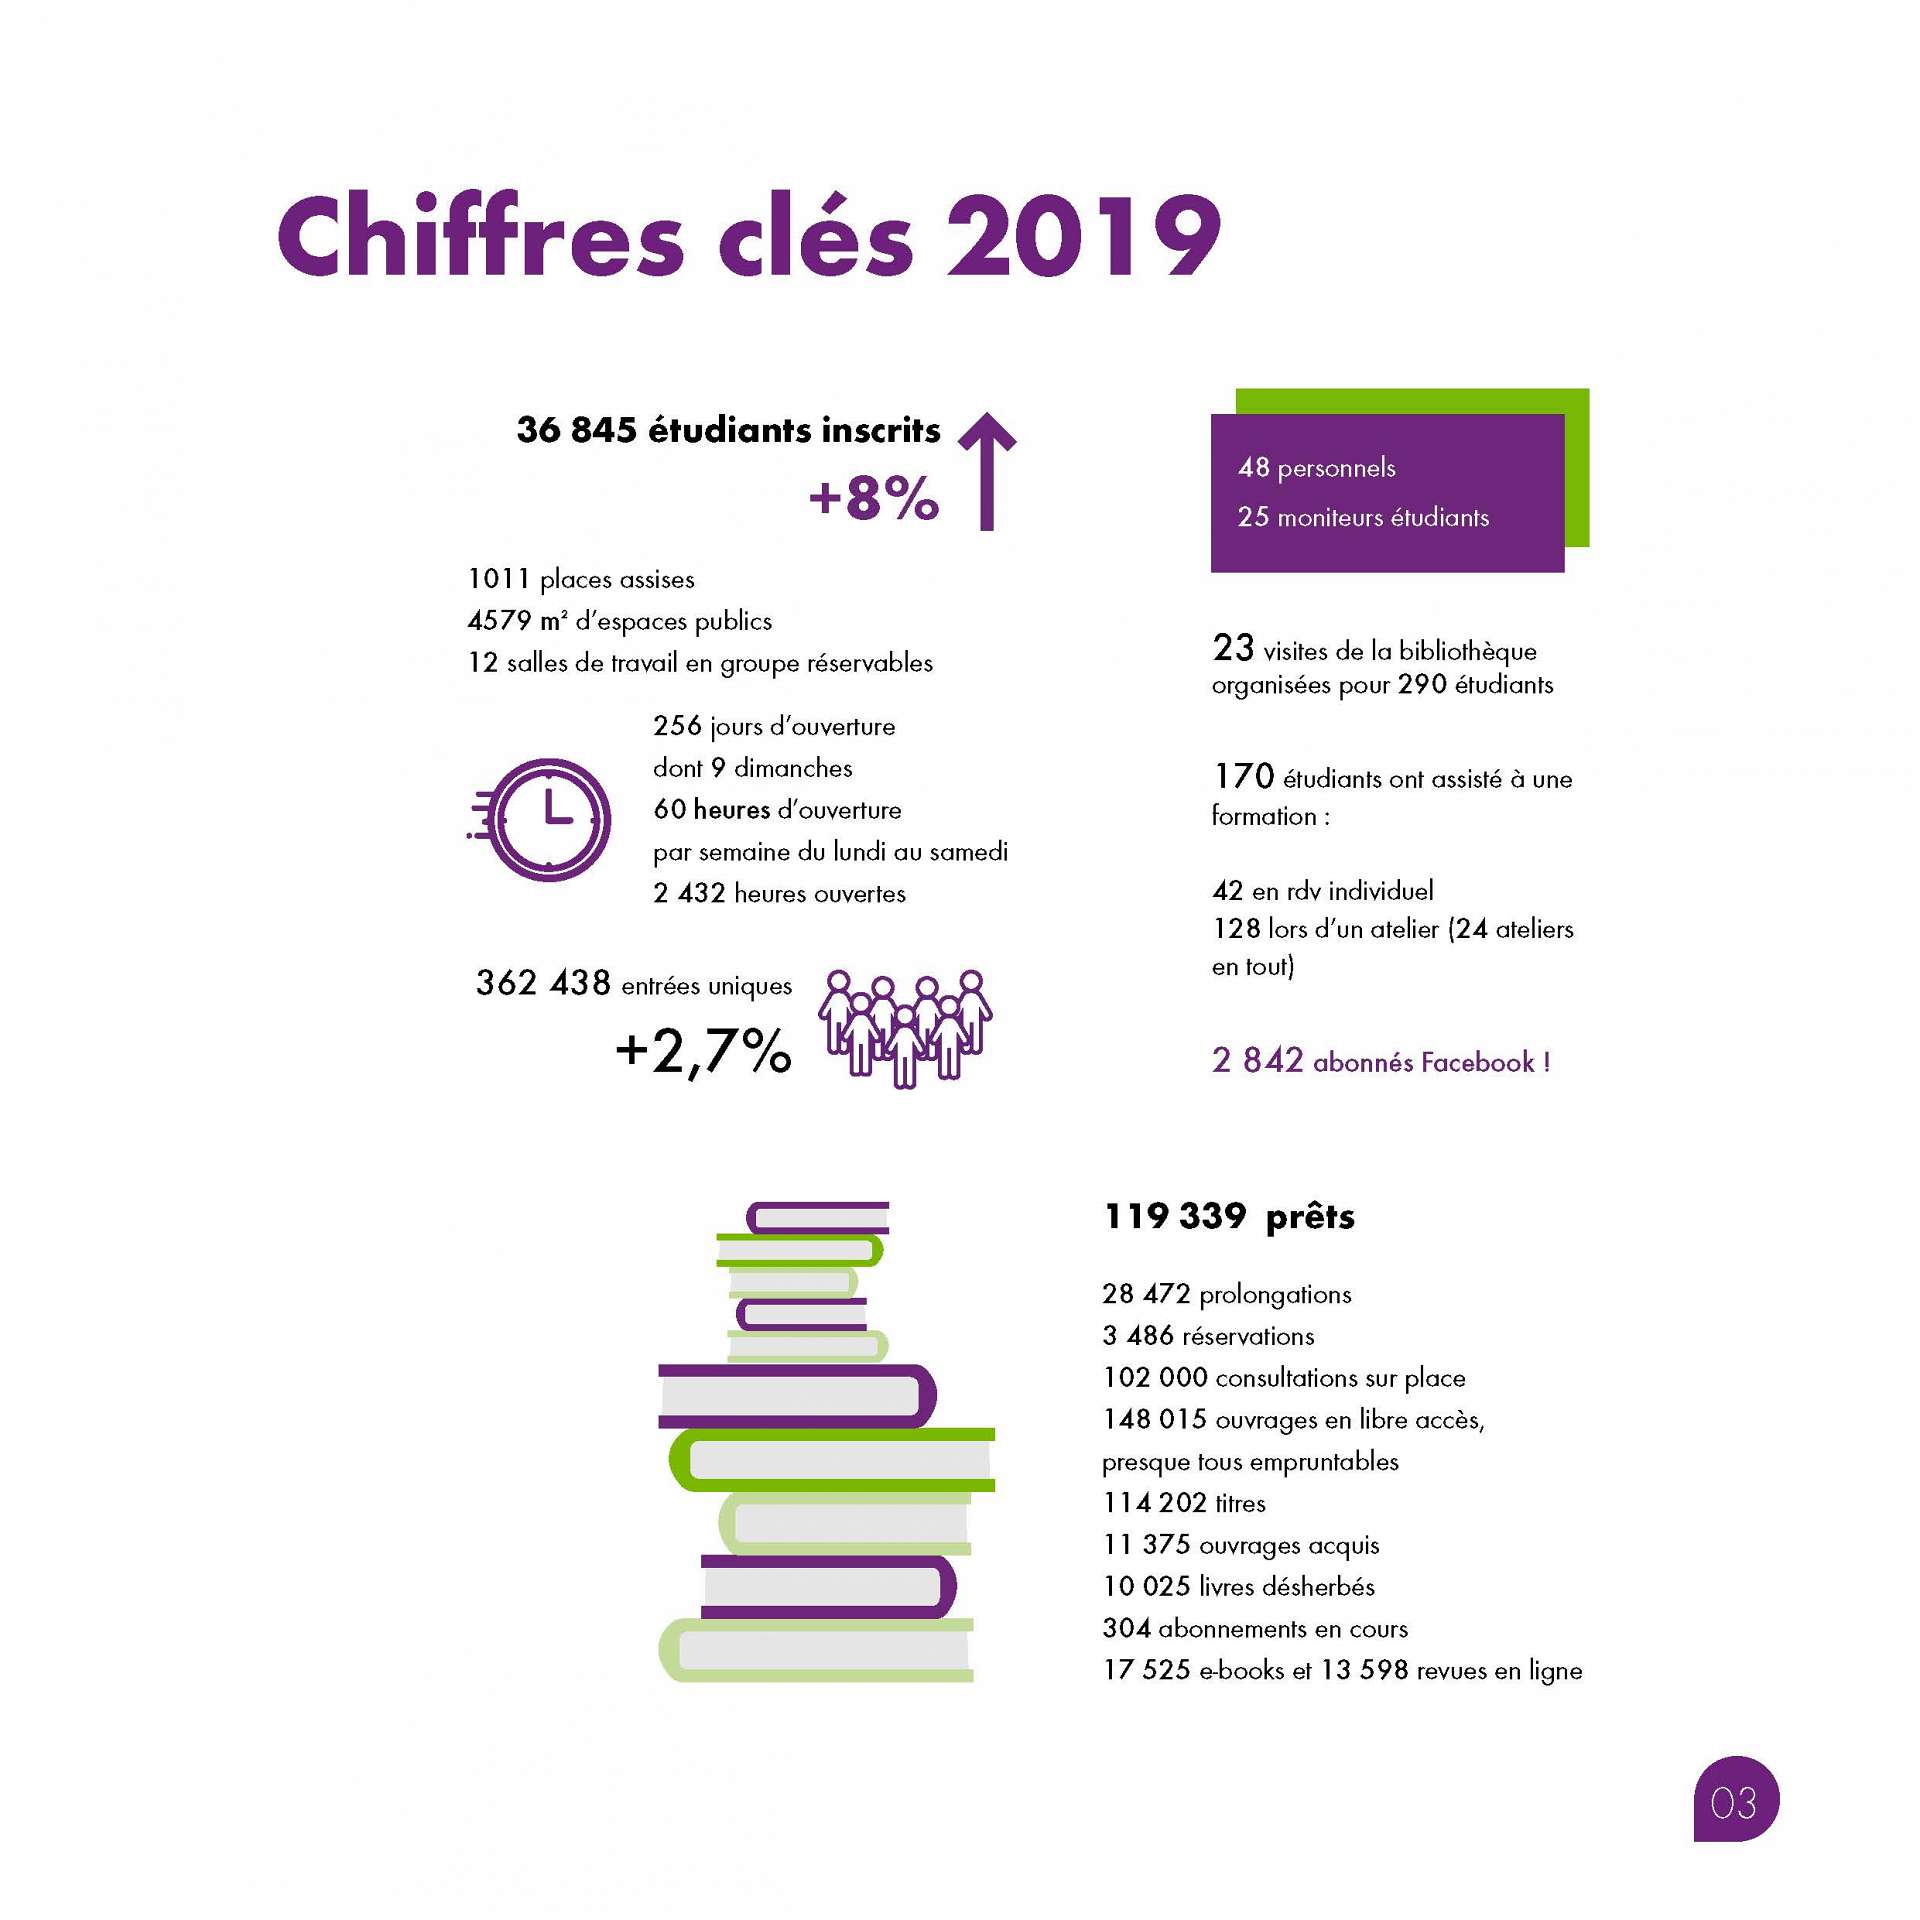 Rapport activite 2019 vignette chiffres cles